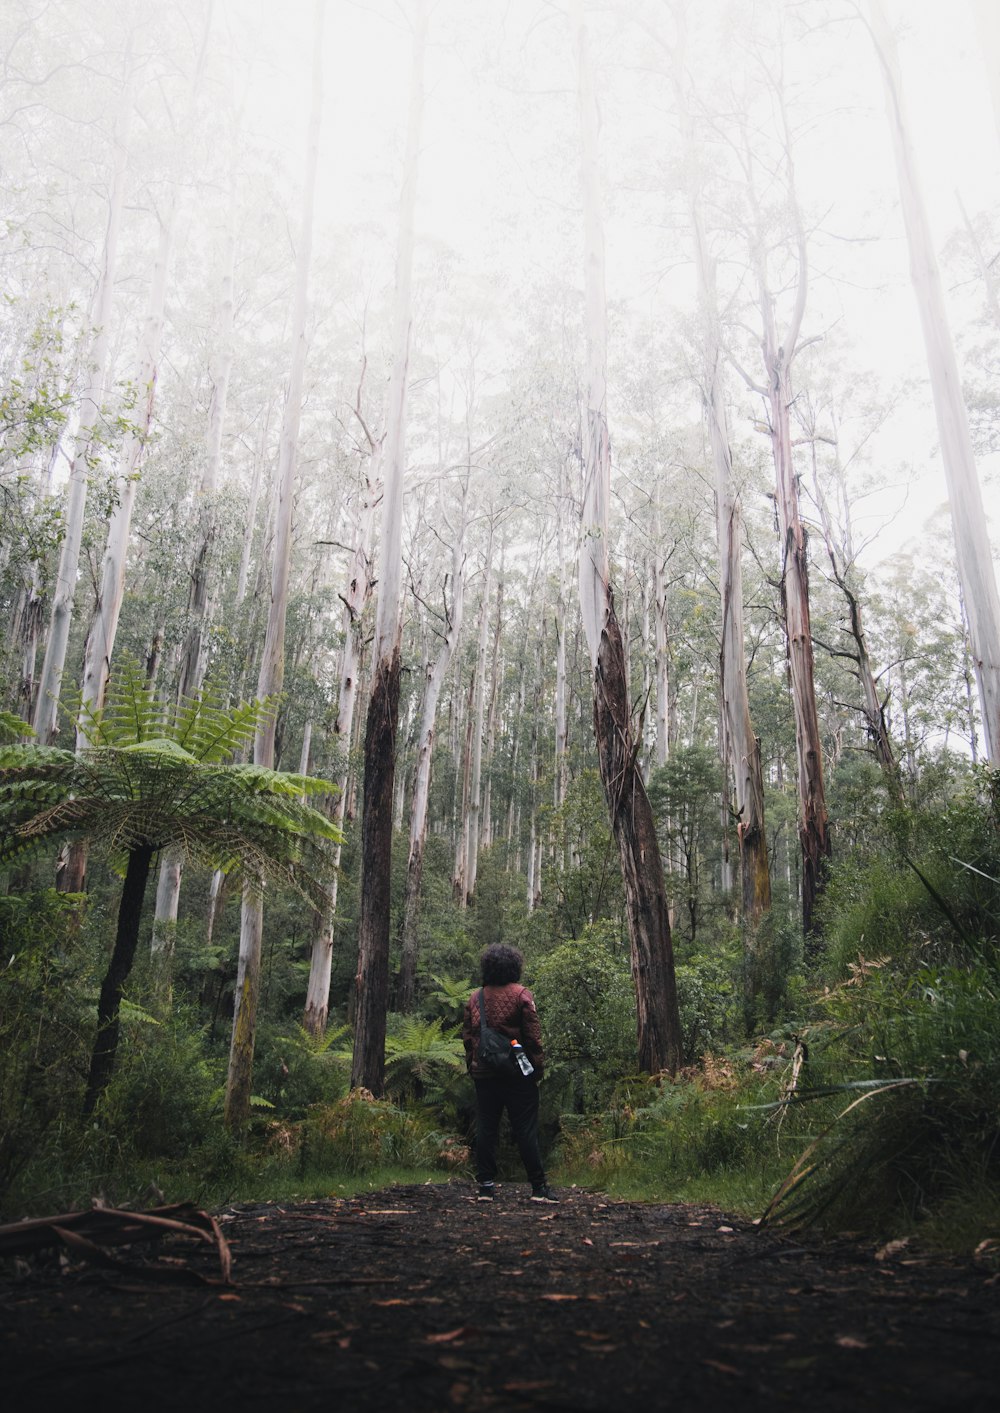 Persona in giacca nera che cammina sulla foresta durante il giorno nebbioso